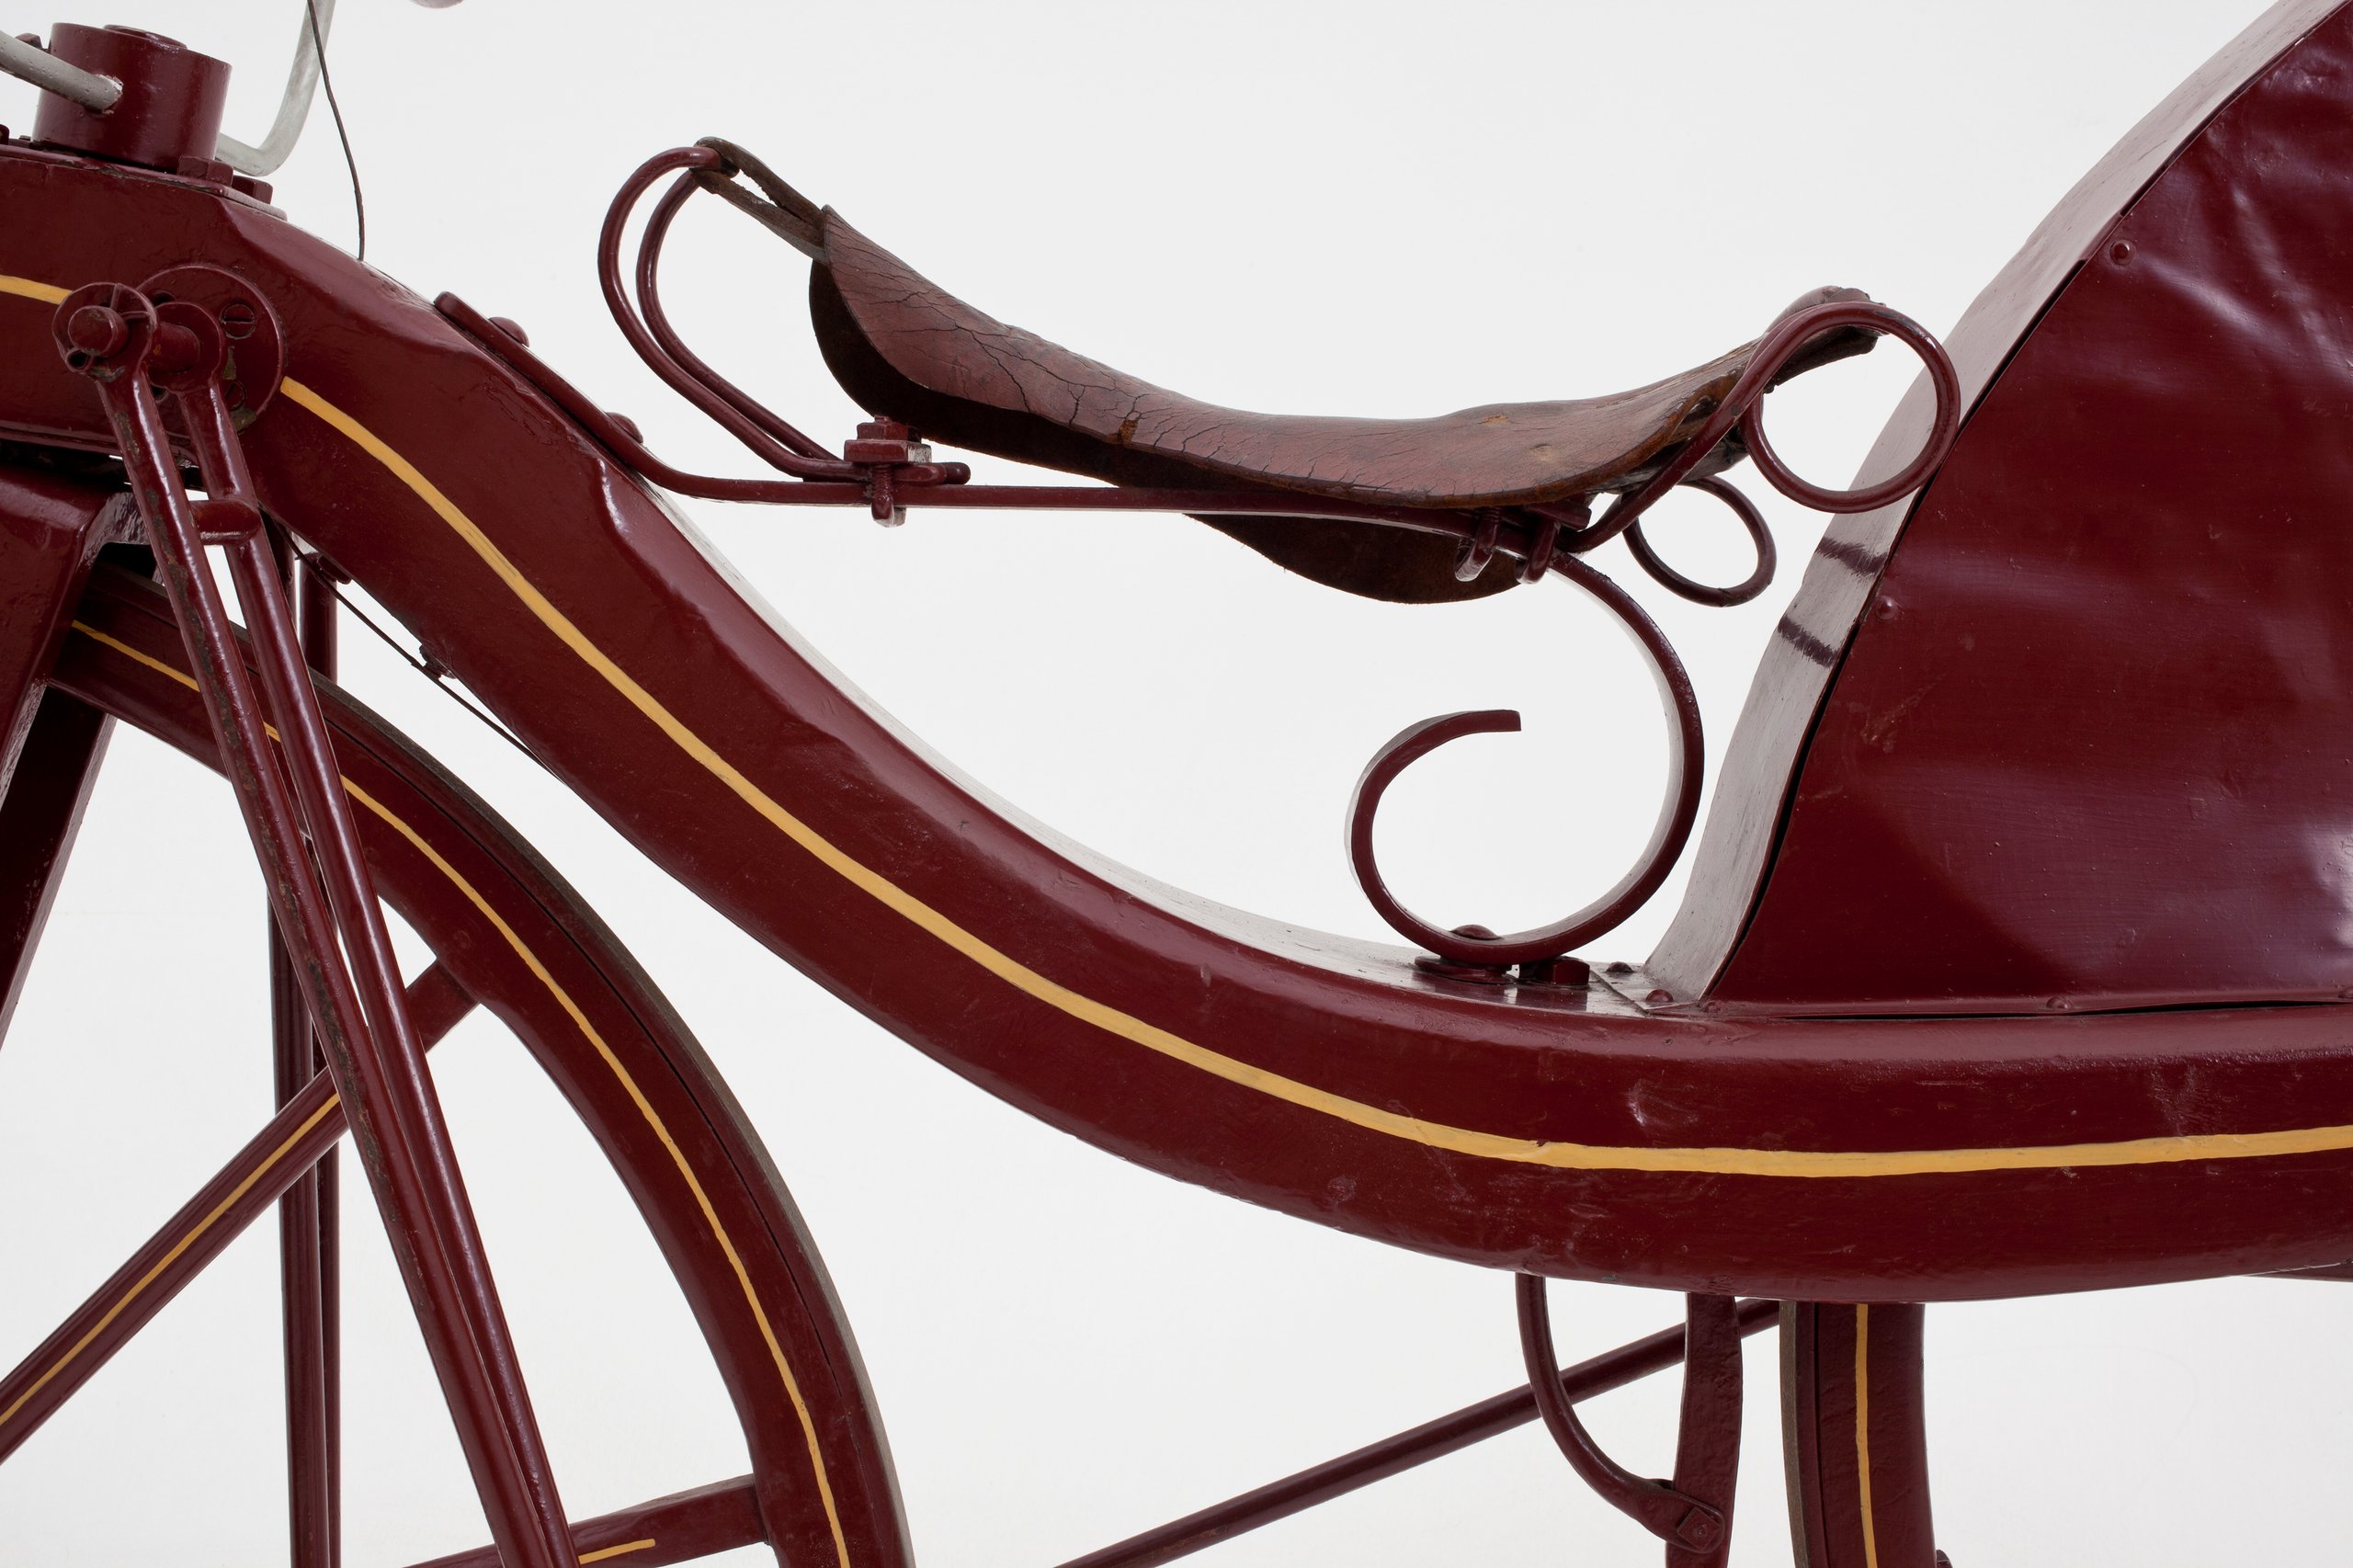 Reproduction of 1839 Macmillan bicycle